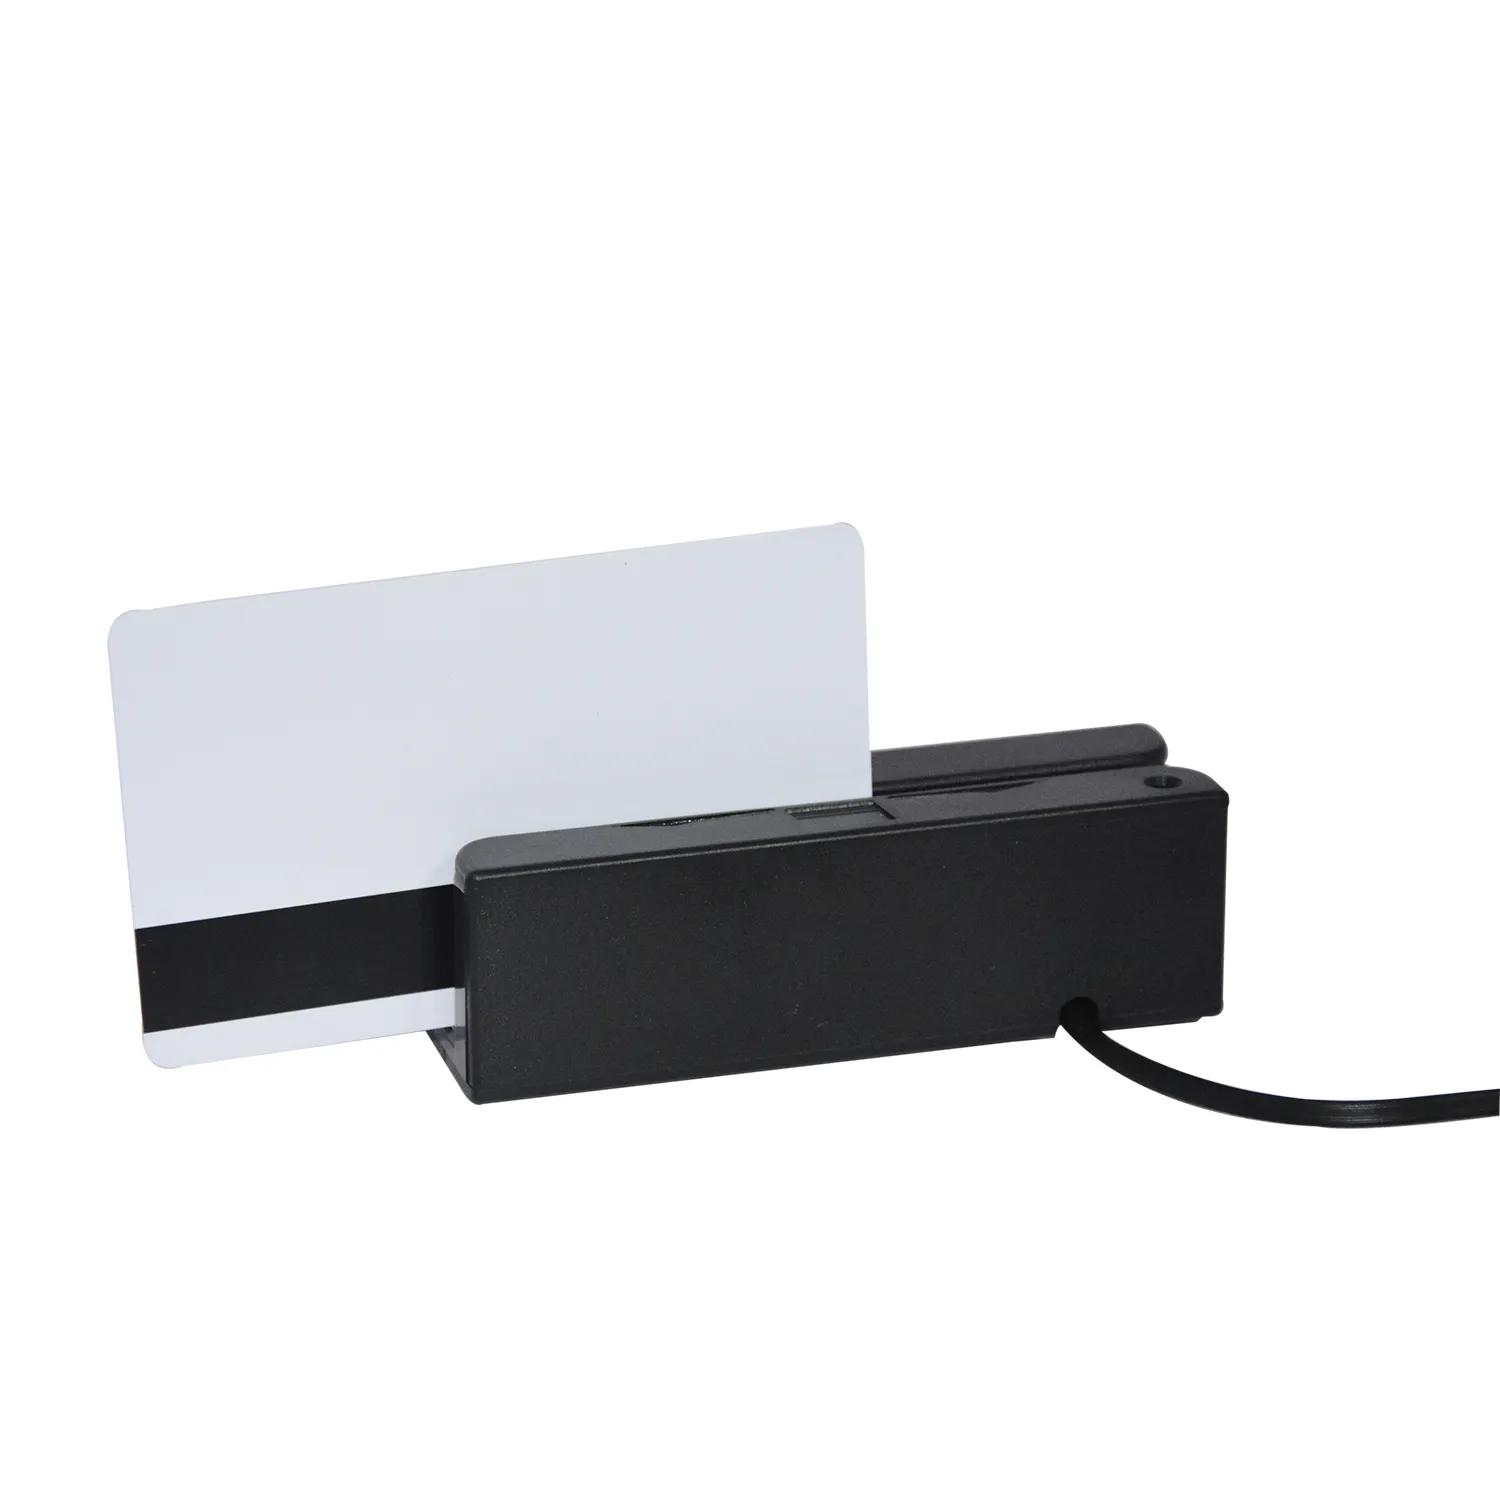 Le MSR Machine portable USB lecteur graveur de carte à bande